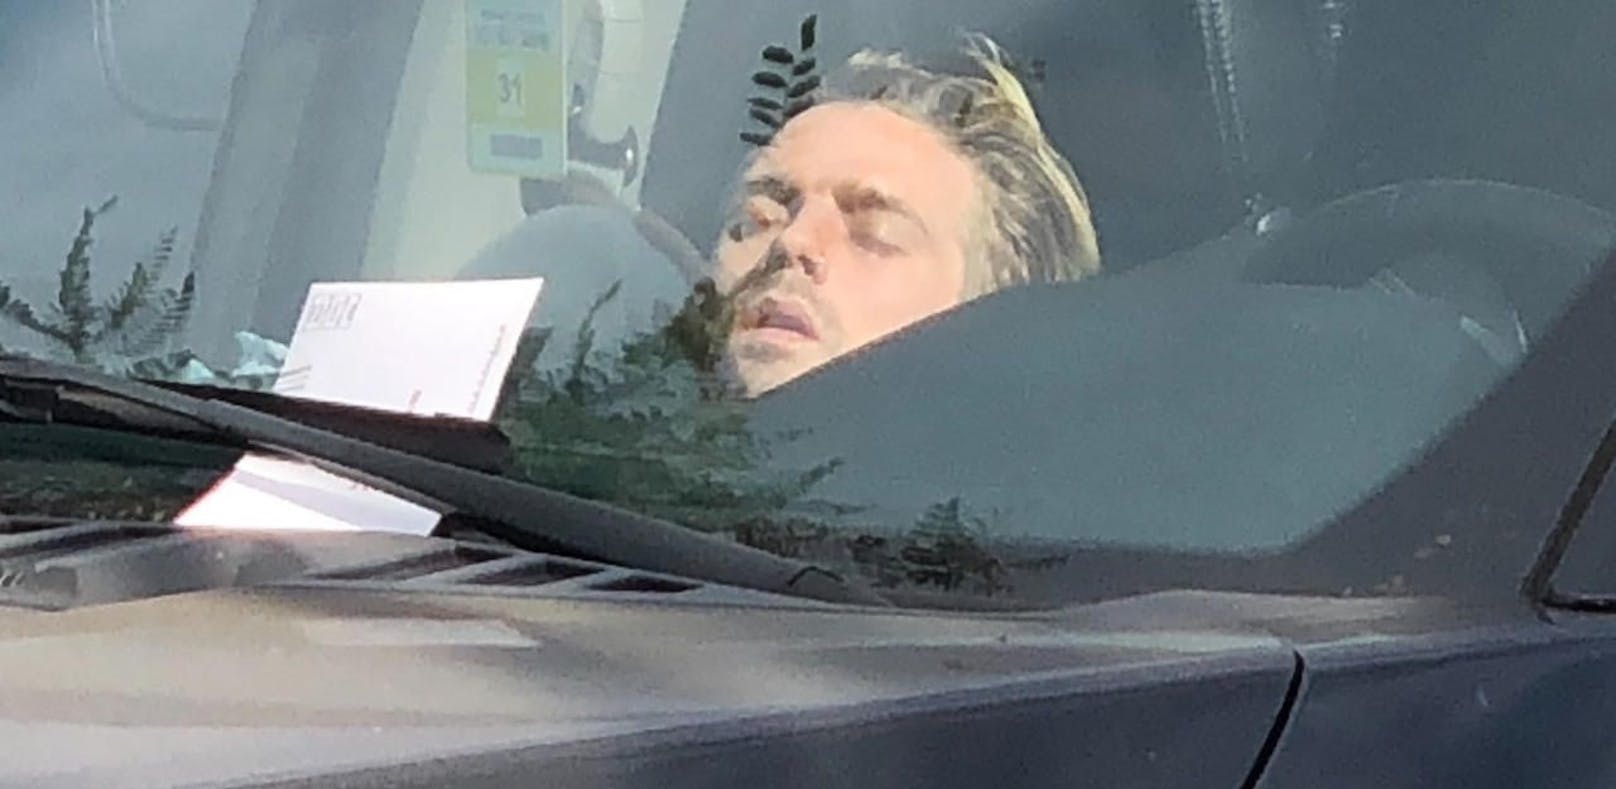 Parkticket für Carter, während er im Auto schlief